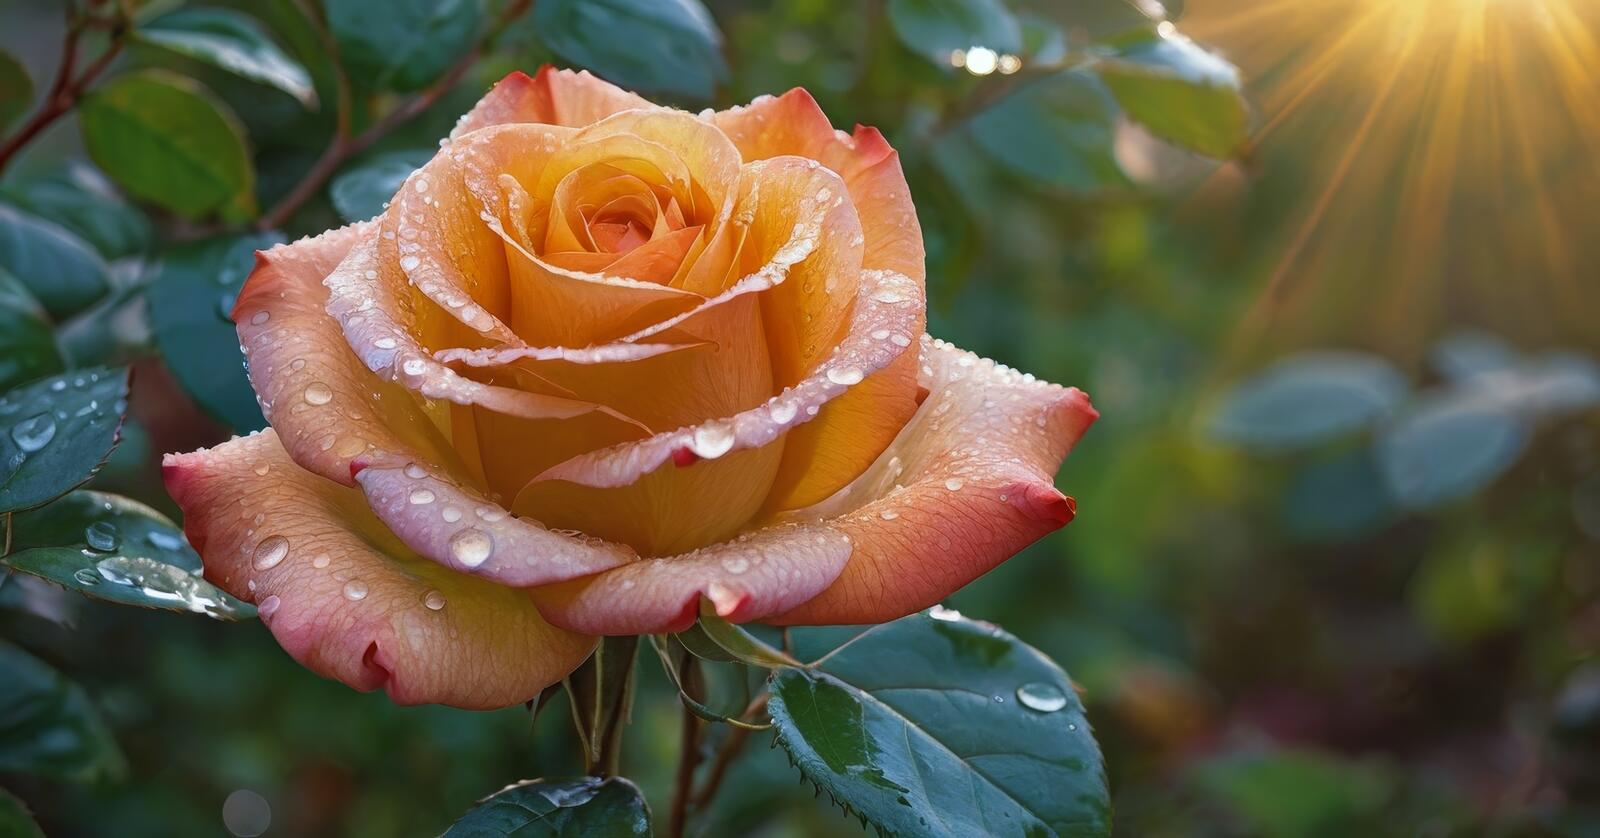 Бесплатное фото Роза с росой на лепестках в саду